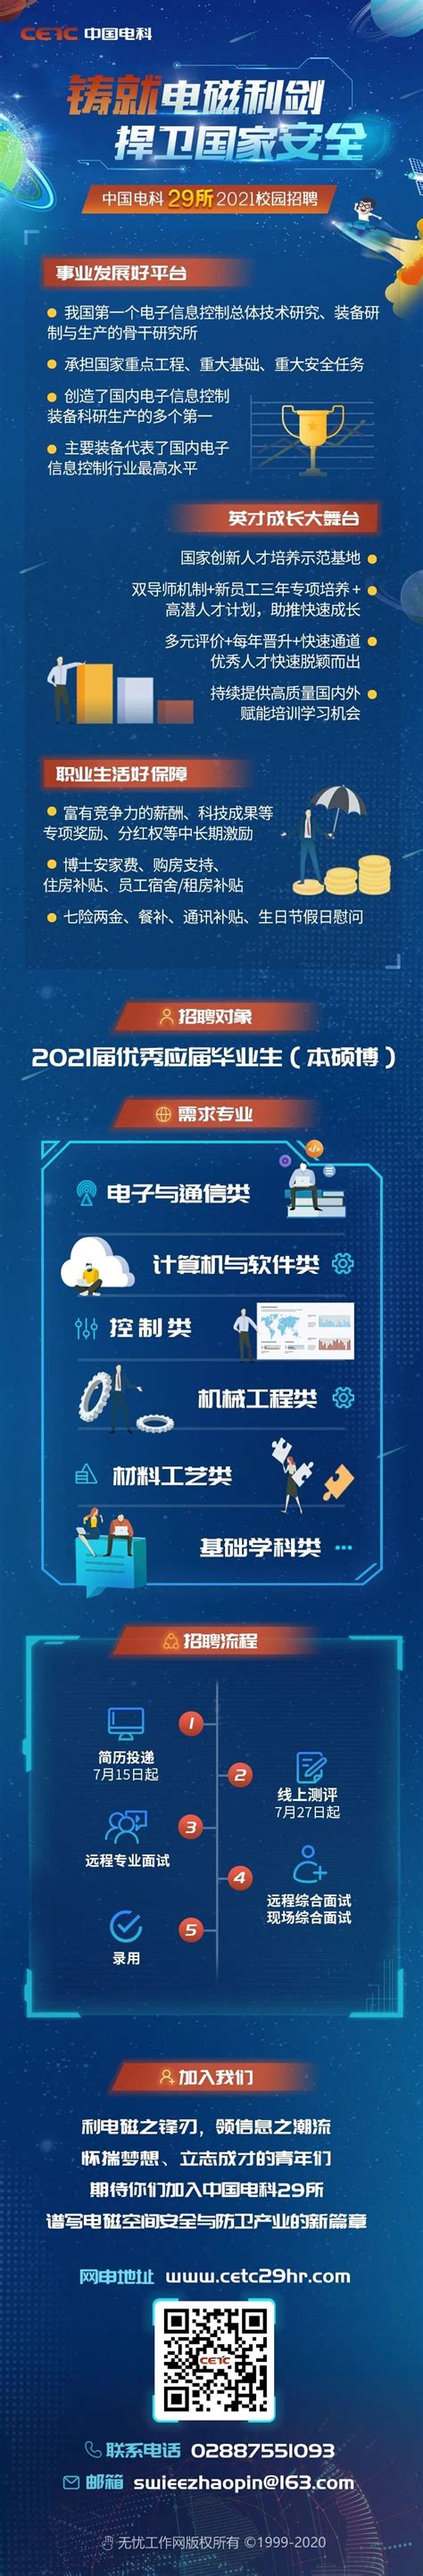 中国电科29所副总工程师杨政为学生授课-电子信息学院